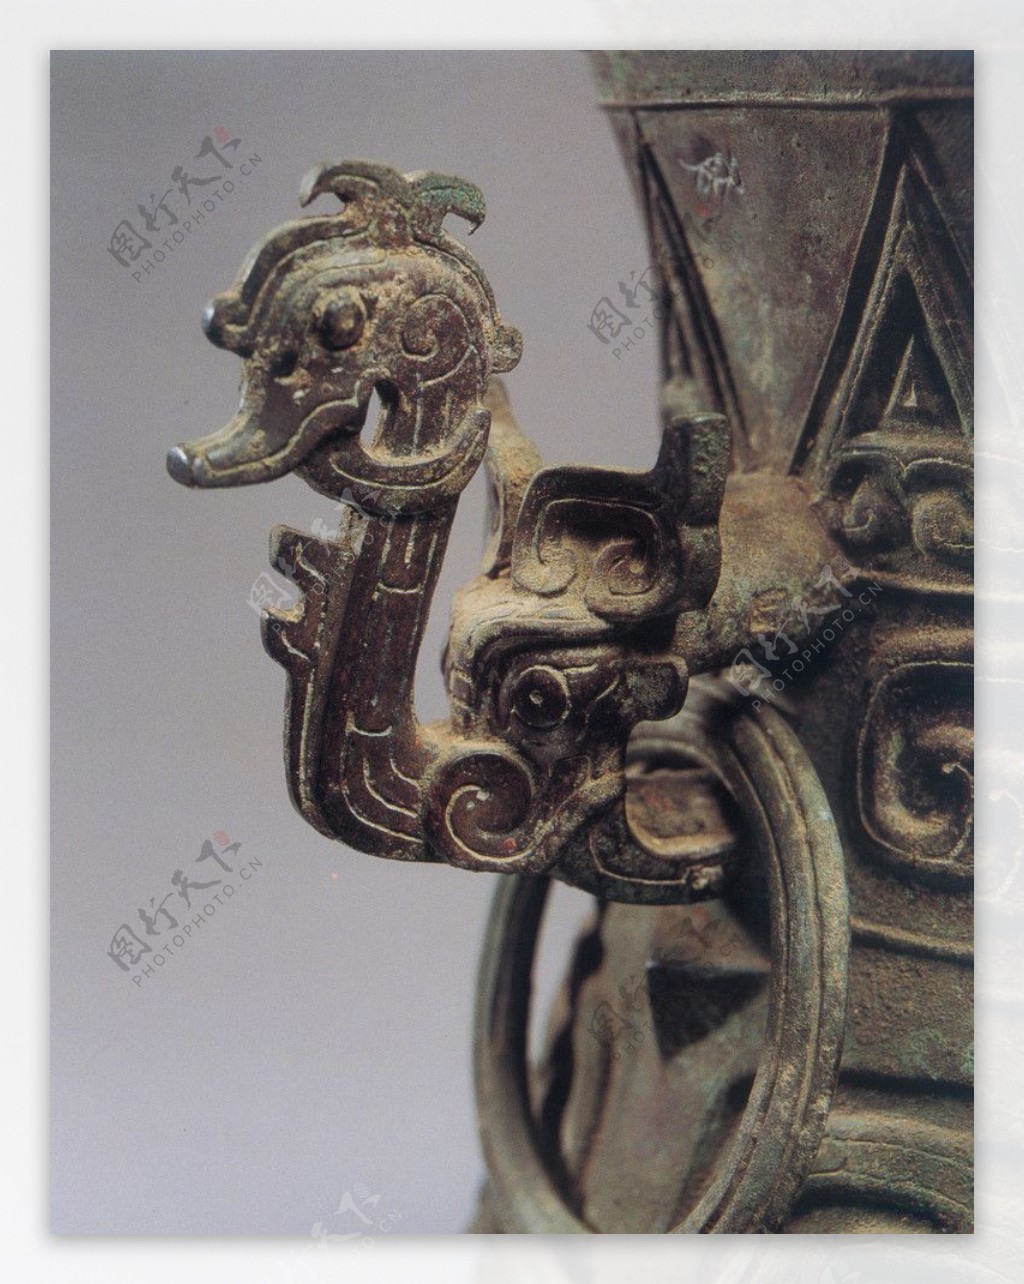 铜器皿铜制品图片